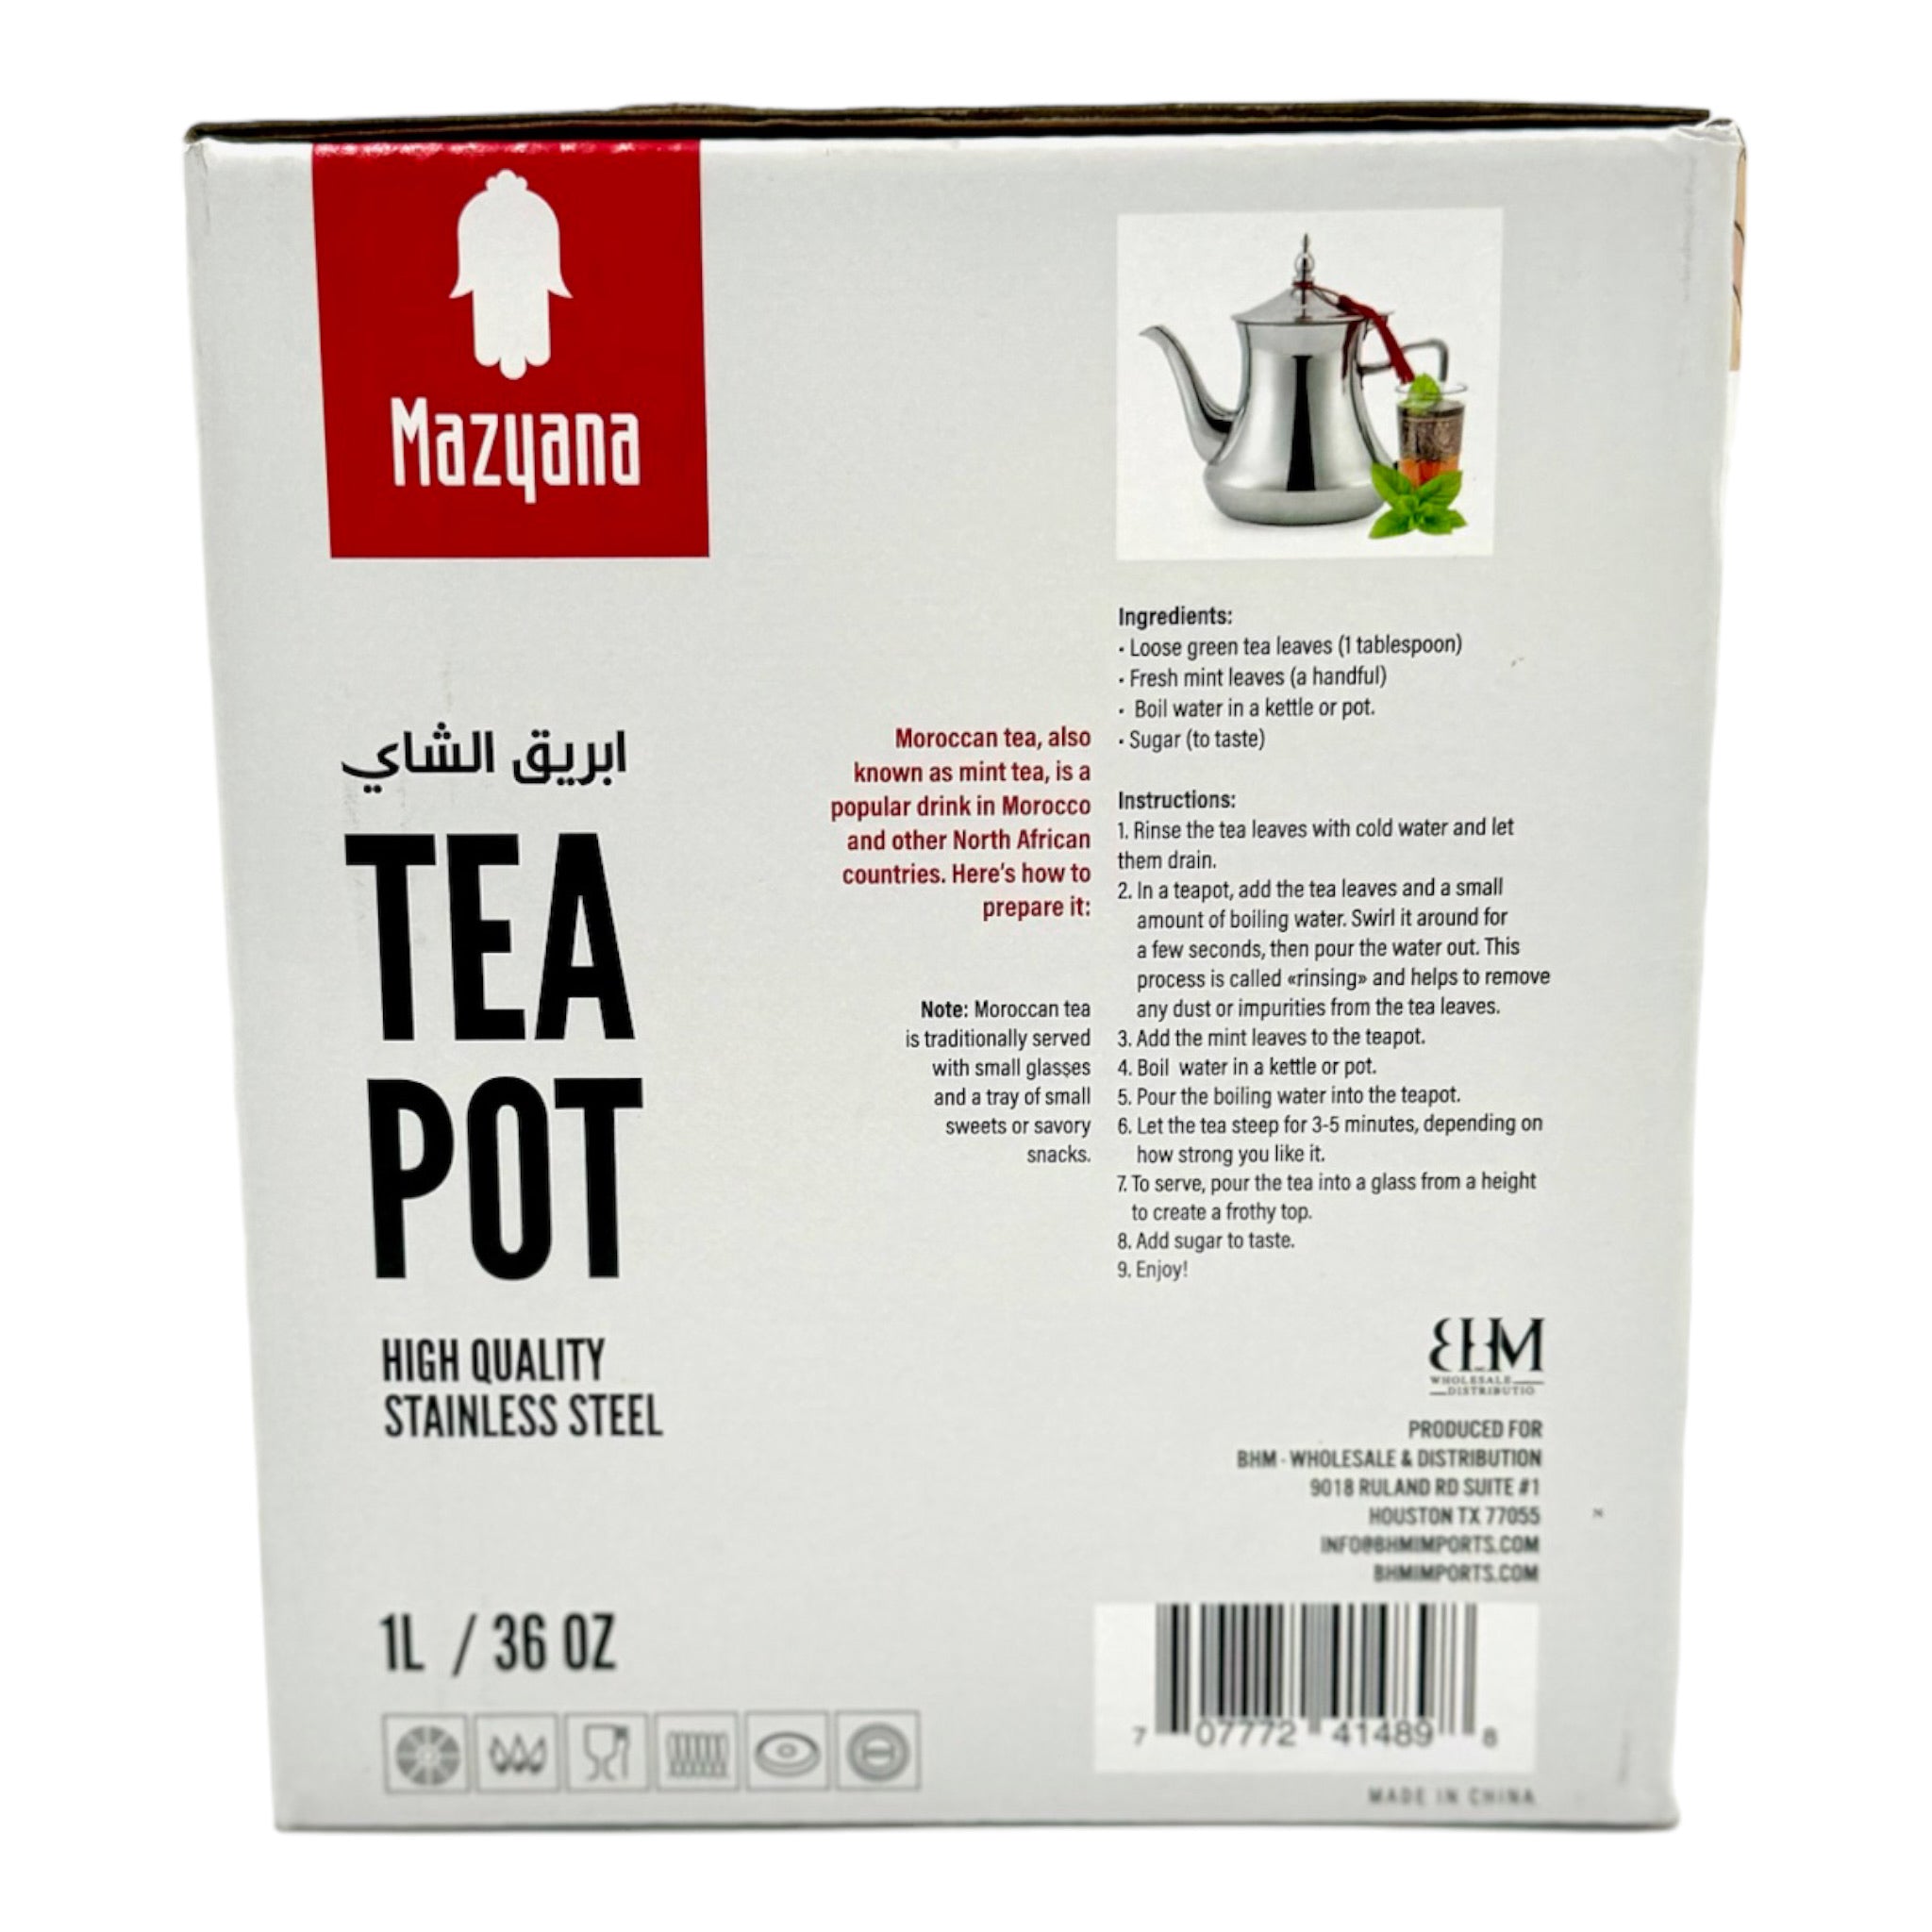 Moroccan Tea Pot by Mazyana Brand